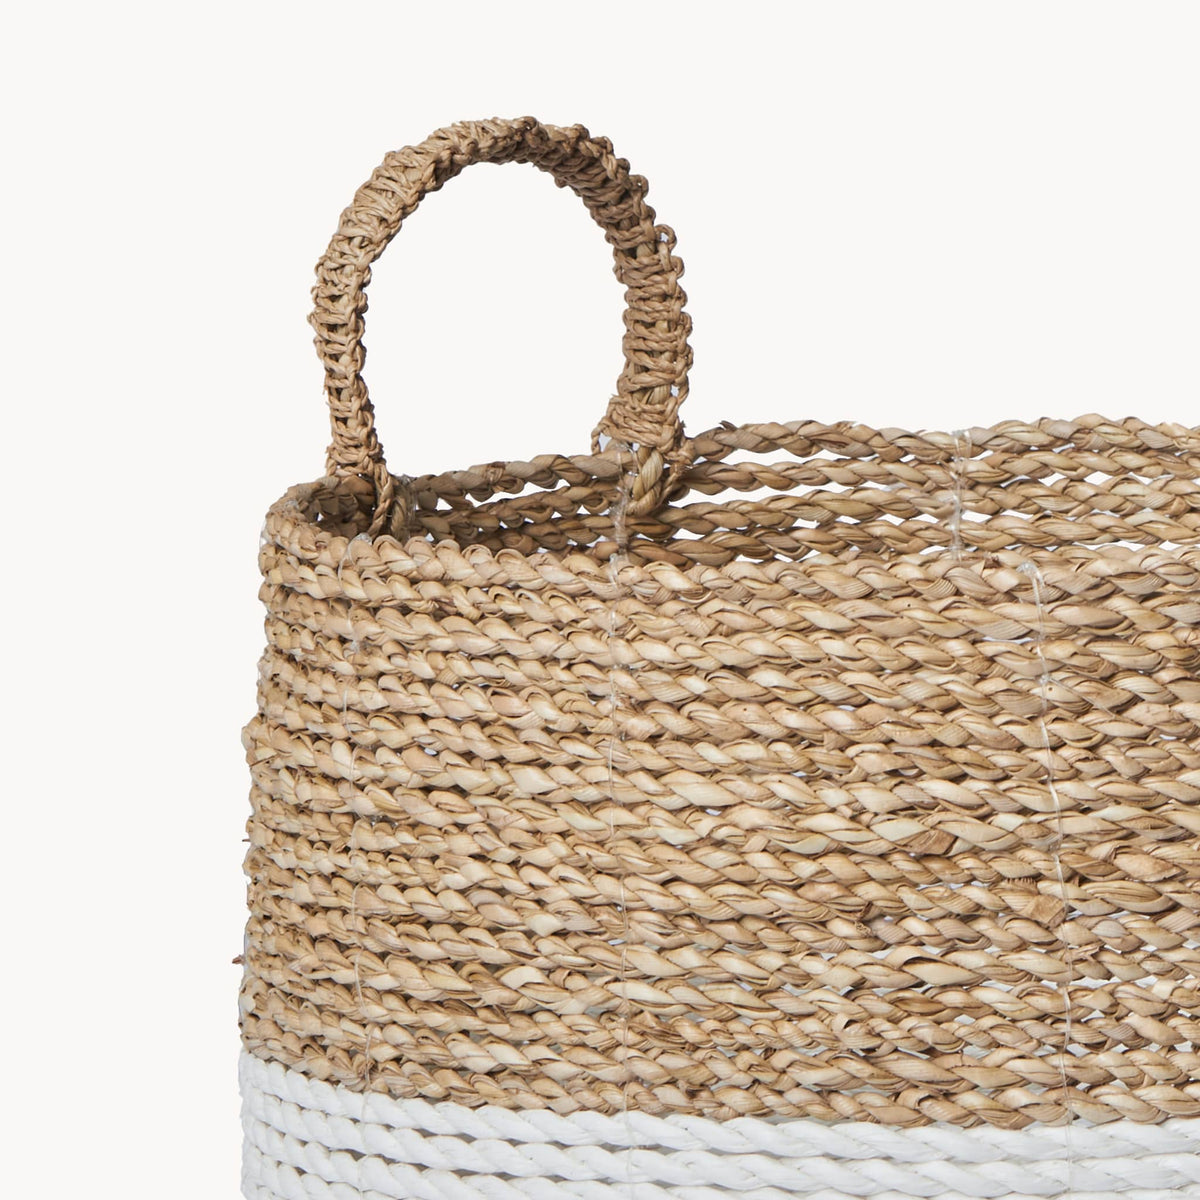 Handled Basket by POKOLOKO